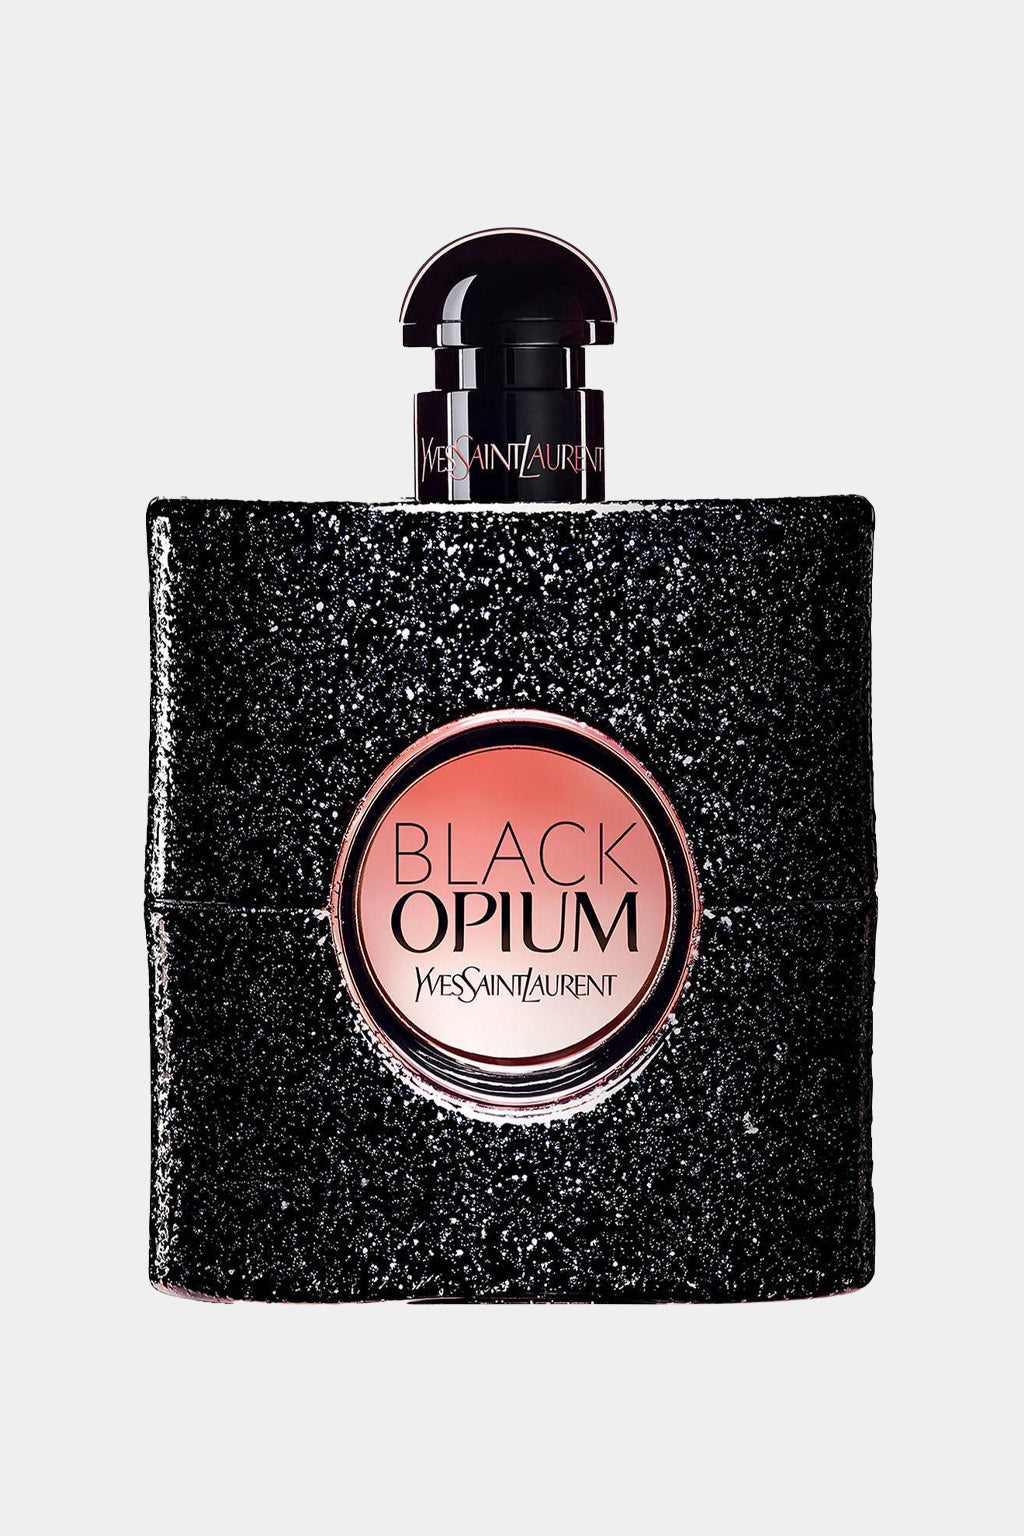 Yves Saint Laurent - Black Opium Eau de Toilette